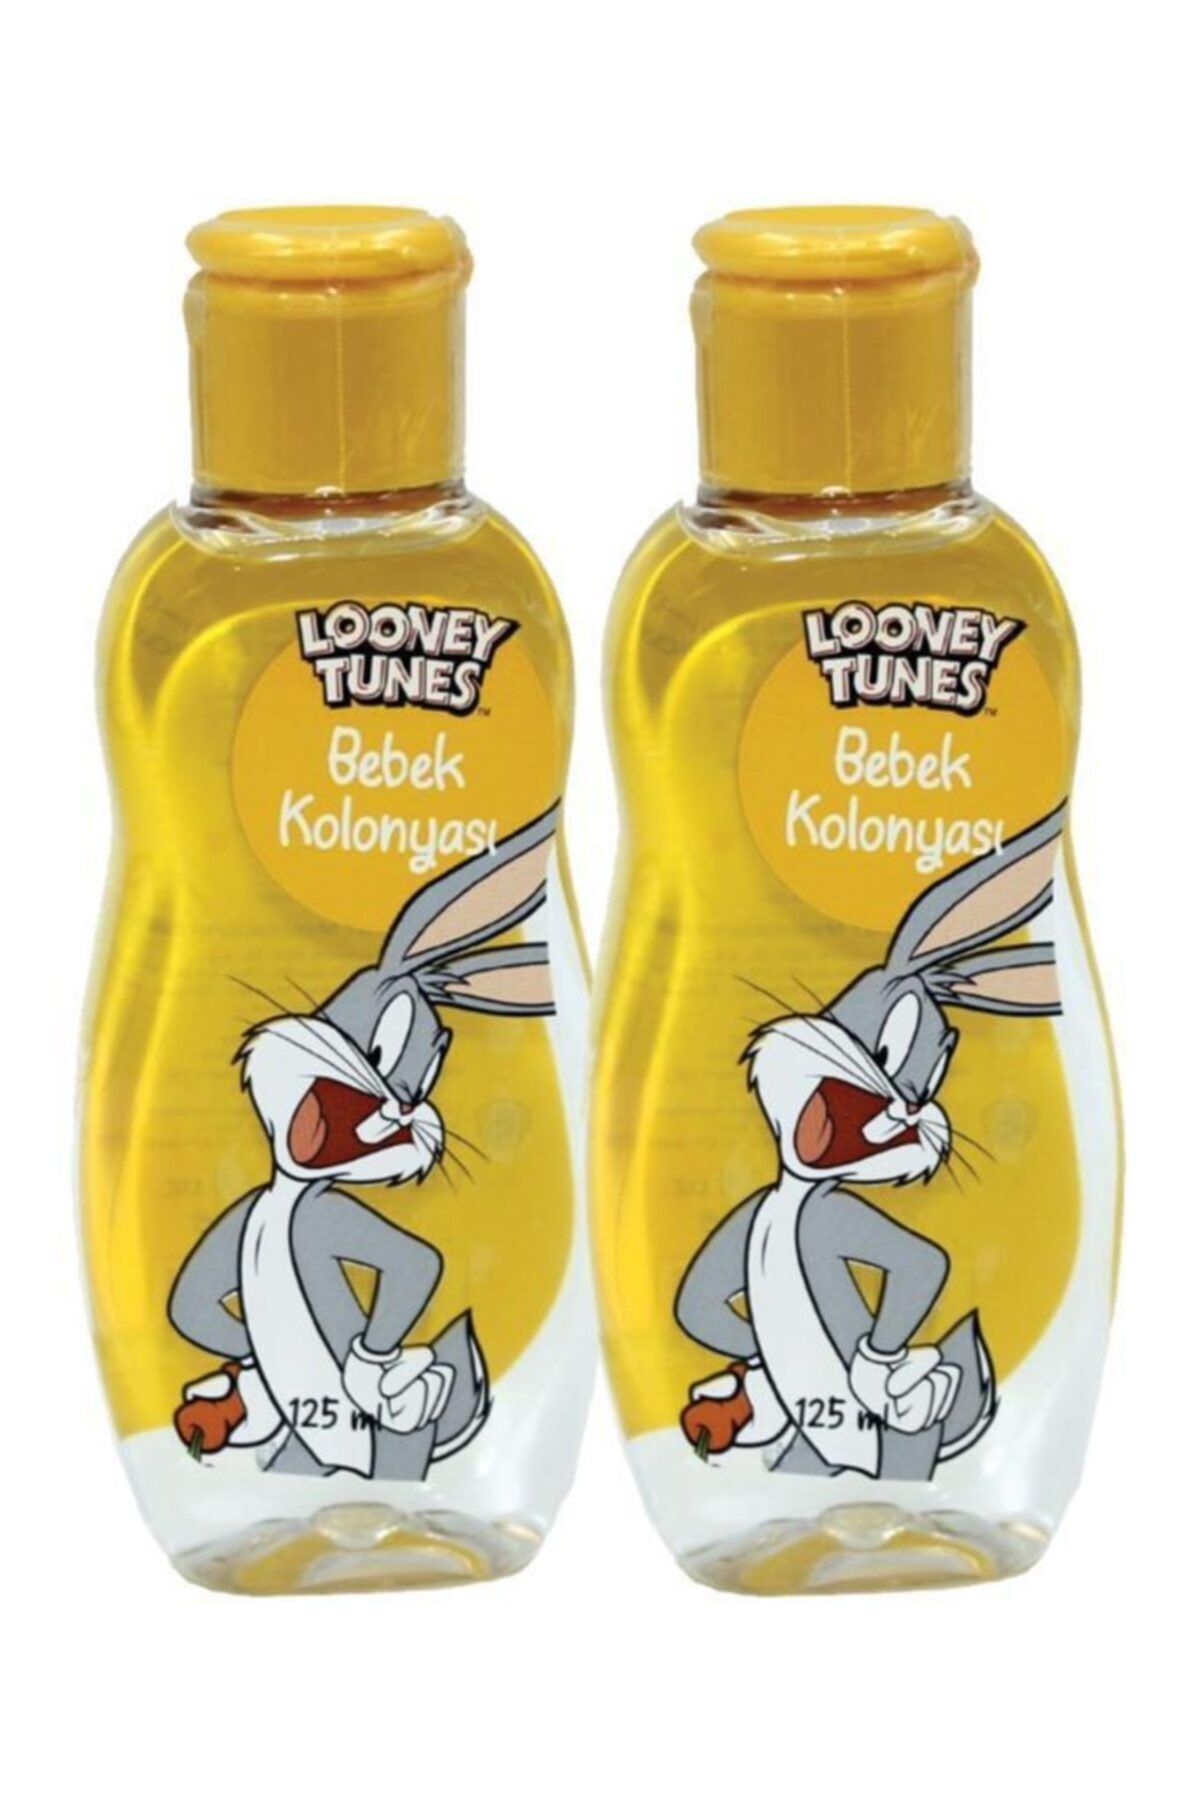 Rebul Looney Tunes Bebek Kolonyasi Bugs Bunny 125 Ml X2 Fiyati Yorumlari Trendyol